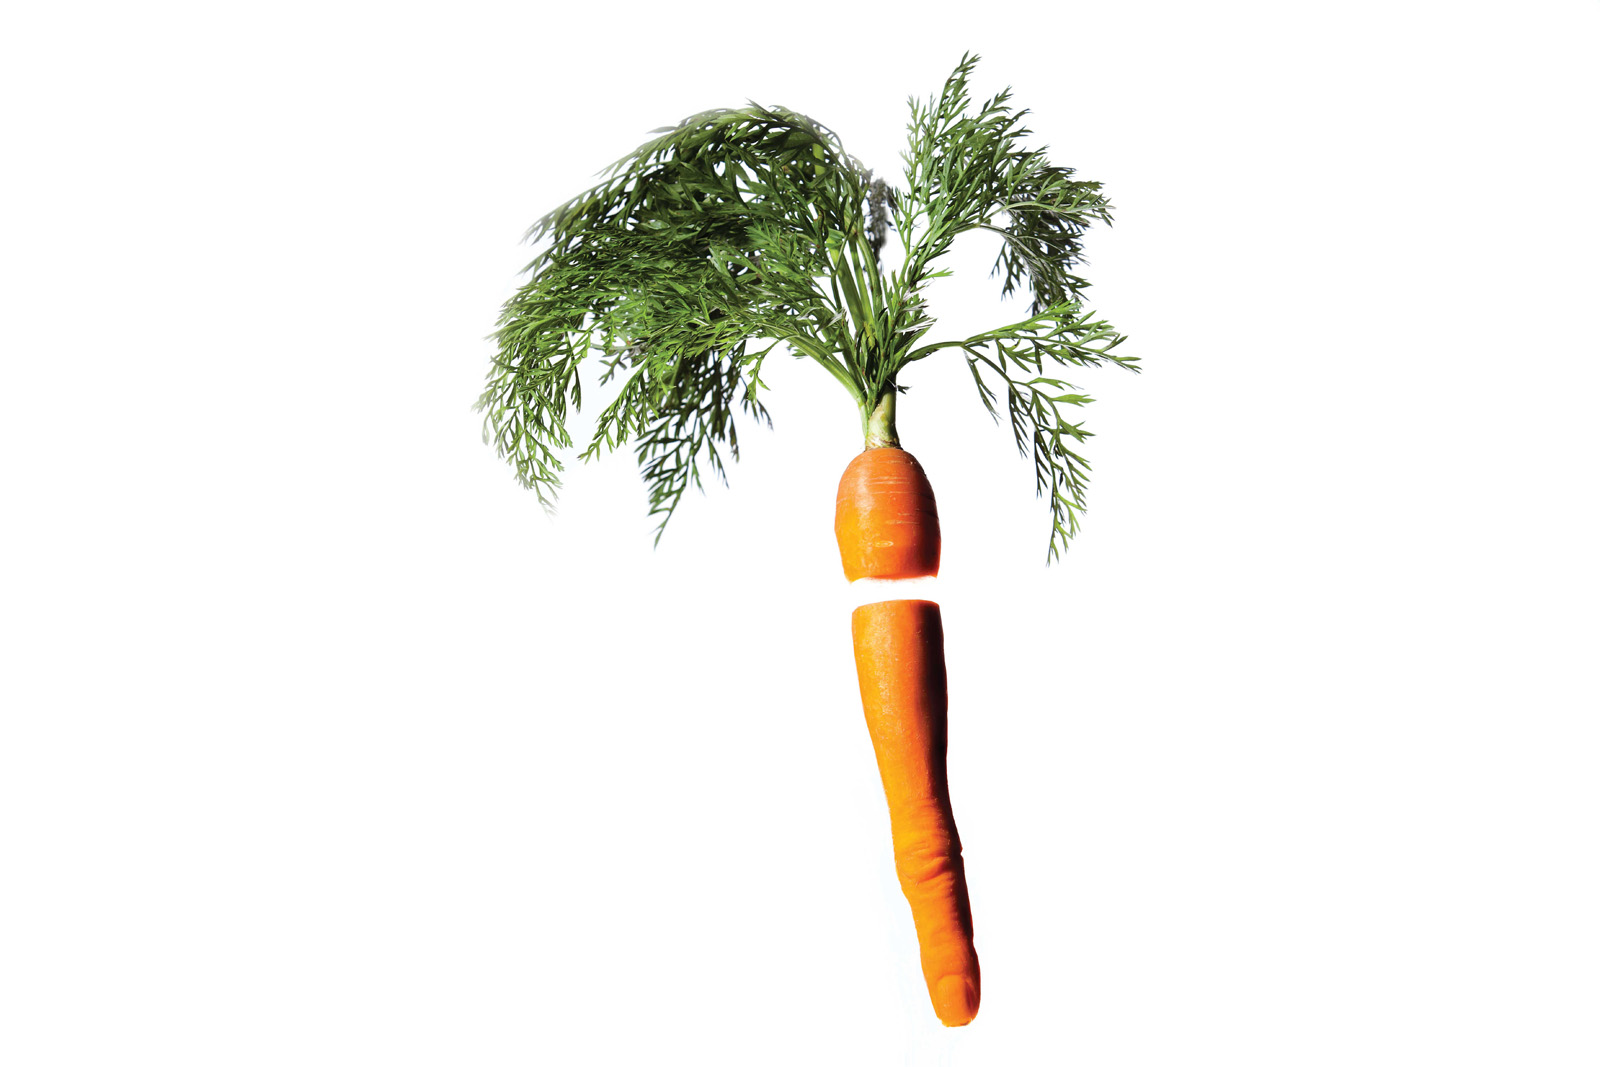 311-carrot-finger-single.jpg